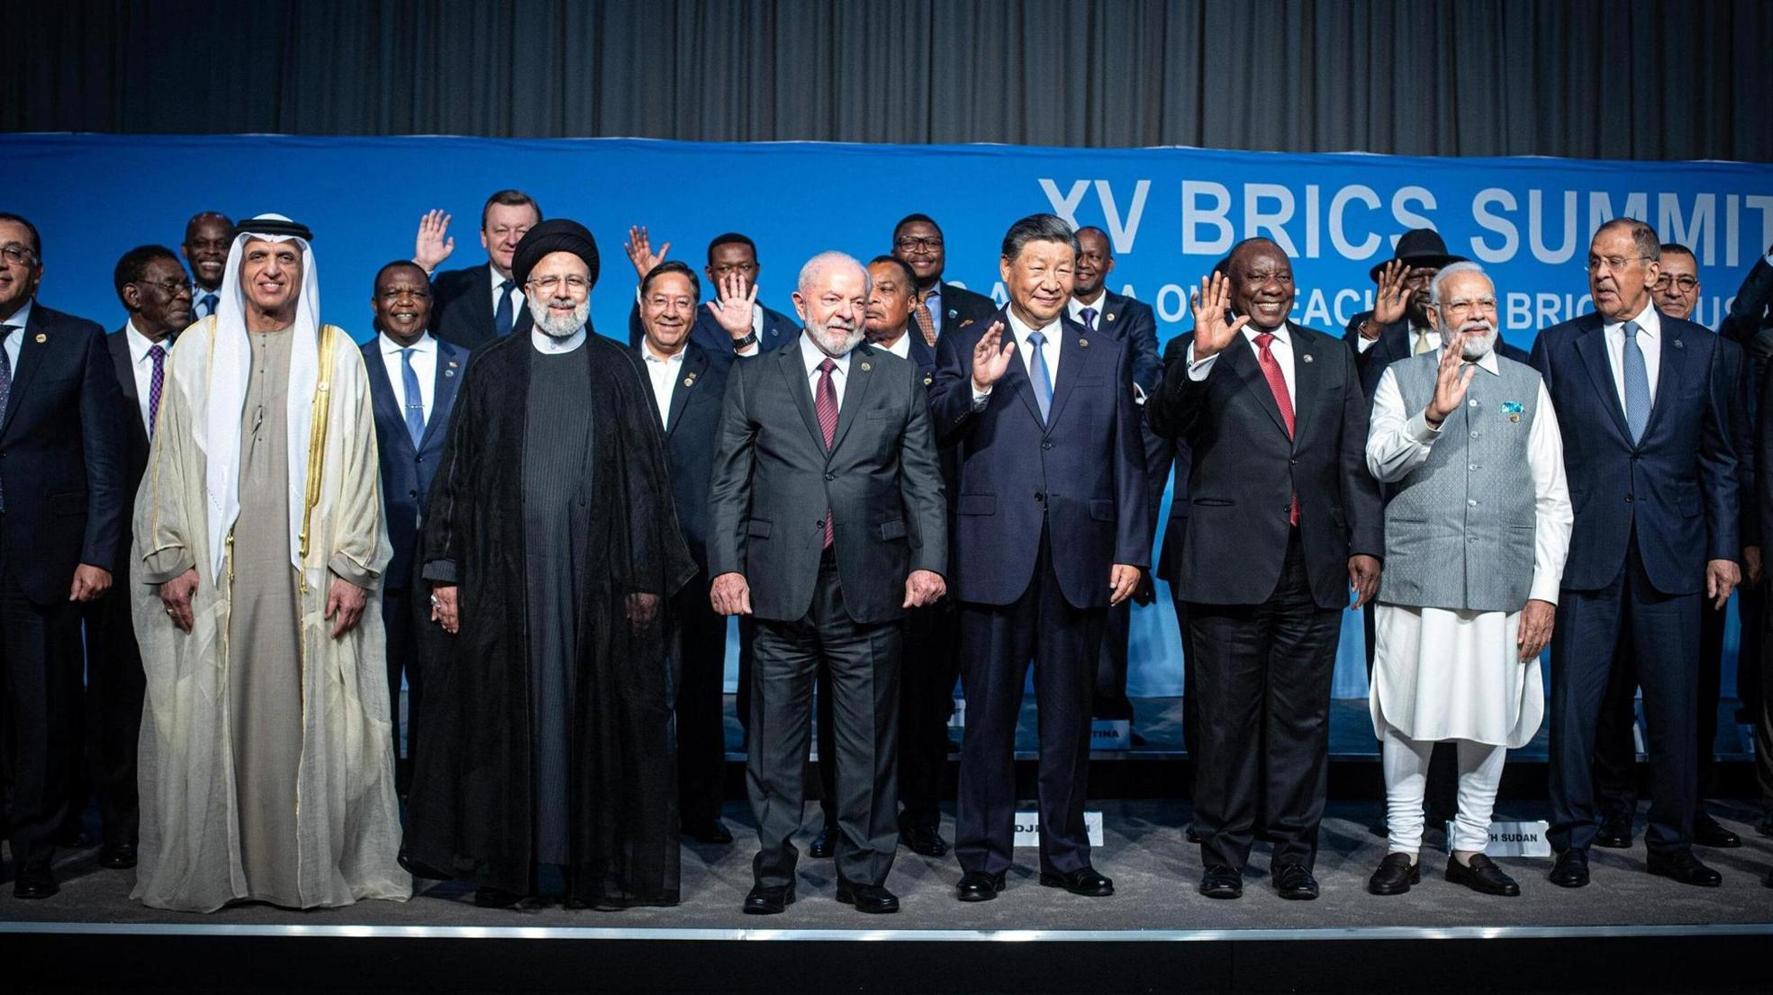 BRICS hails 'historic' entry of new members amid bloc rivalry